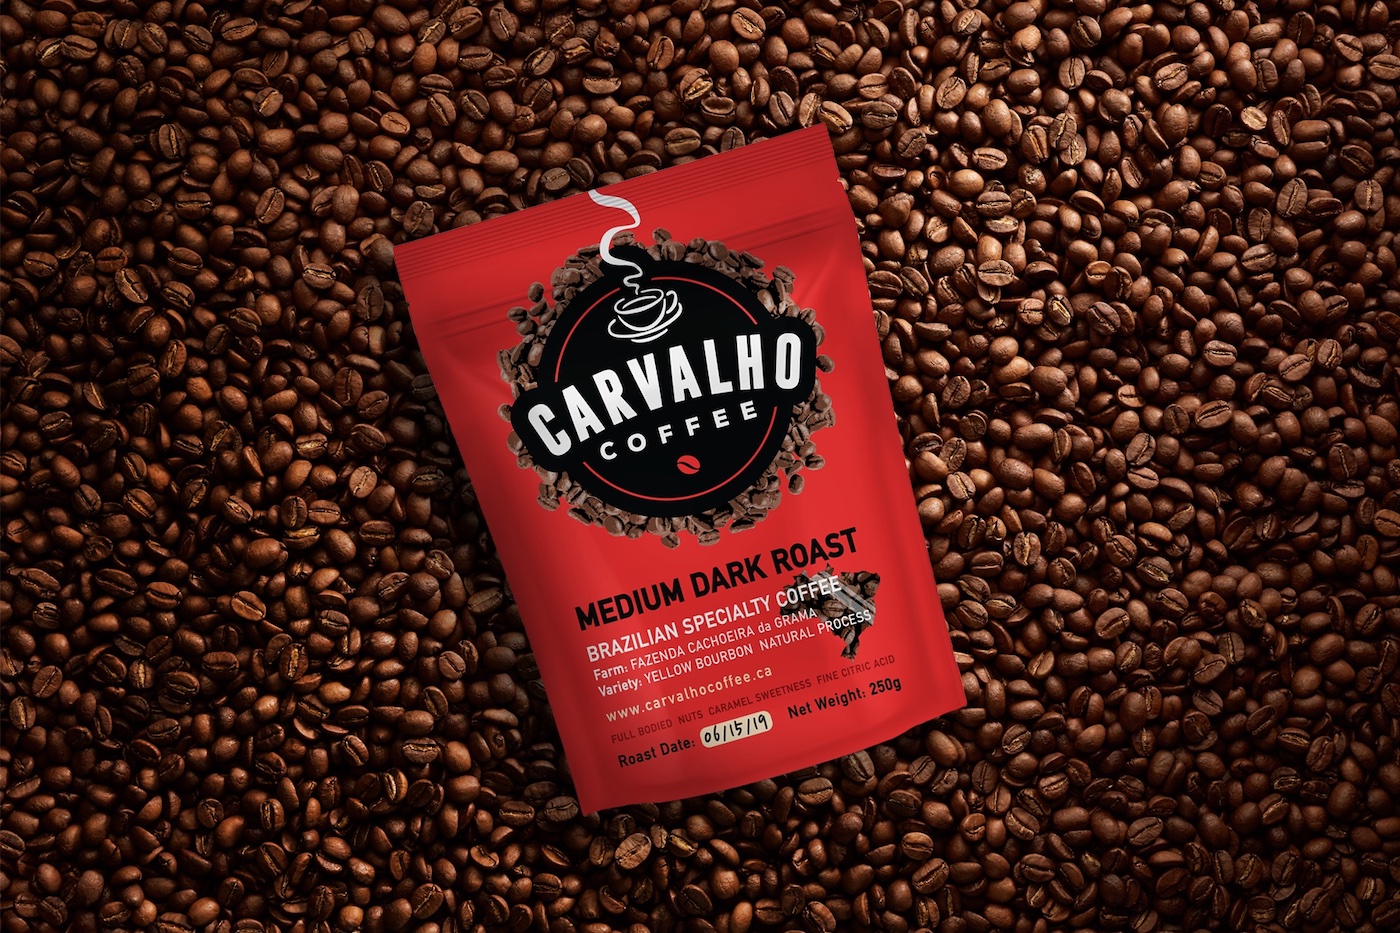 2019: Carvalho Coffee